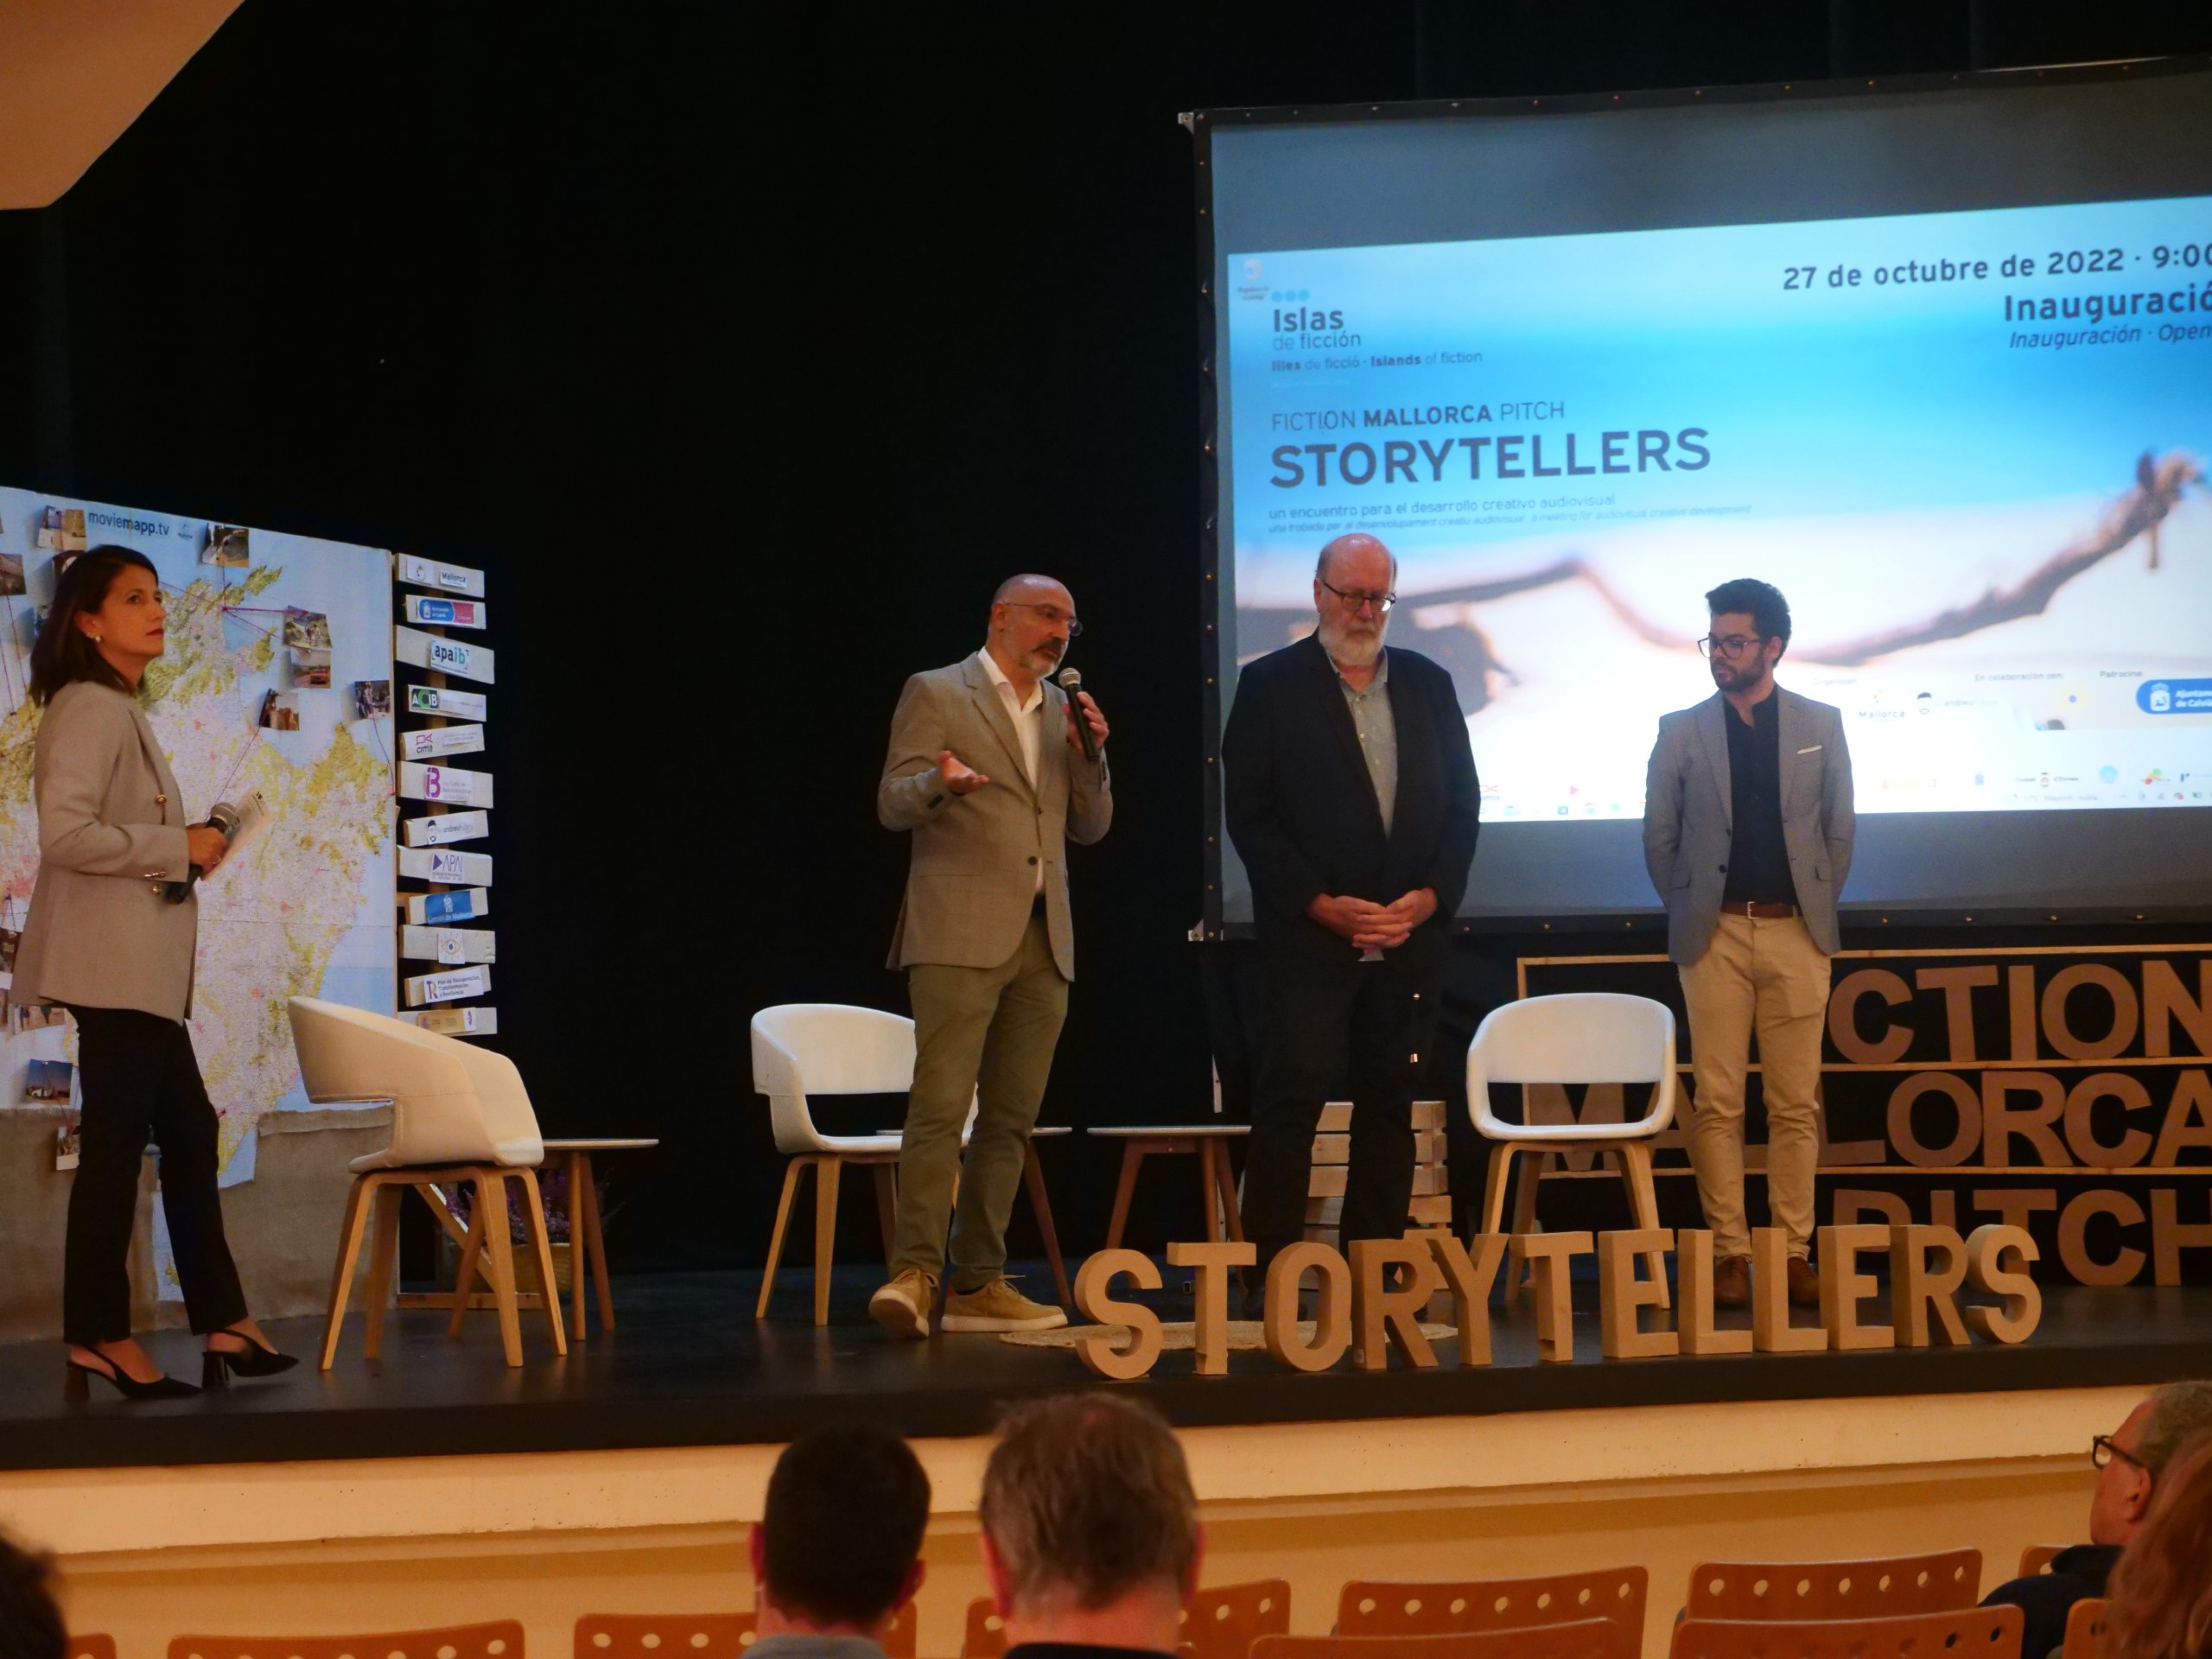 Inauguració del Fiction Mallorca Pitch, Storytellers a Calvià